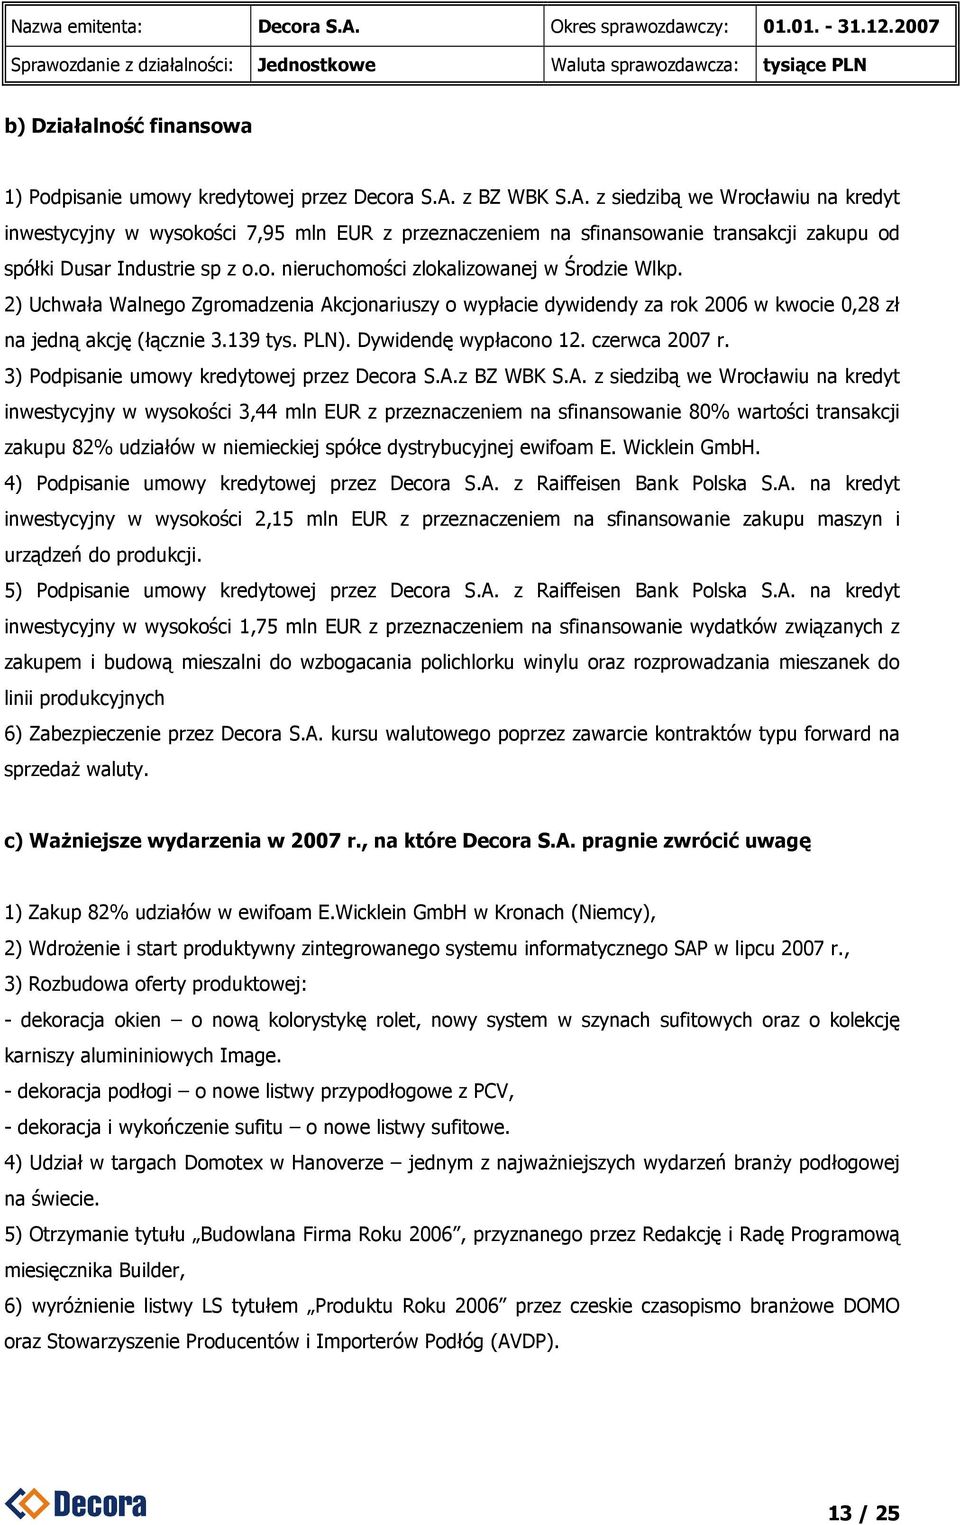 2) Uchwała Walnego Zgromadzenia Akcjonariuszy o wypłacie dywidendy za rok 2006 w kwocie 0,28 zł na jedną akcję (łącznie 3.139 tys. PLN). Dywidendę wypłacono 12. czerwca 2007 r.